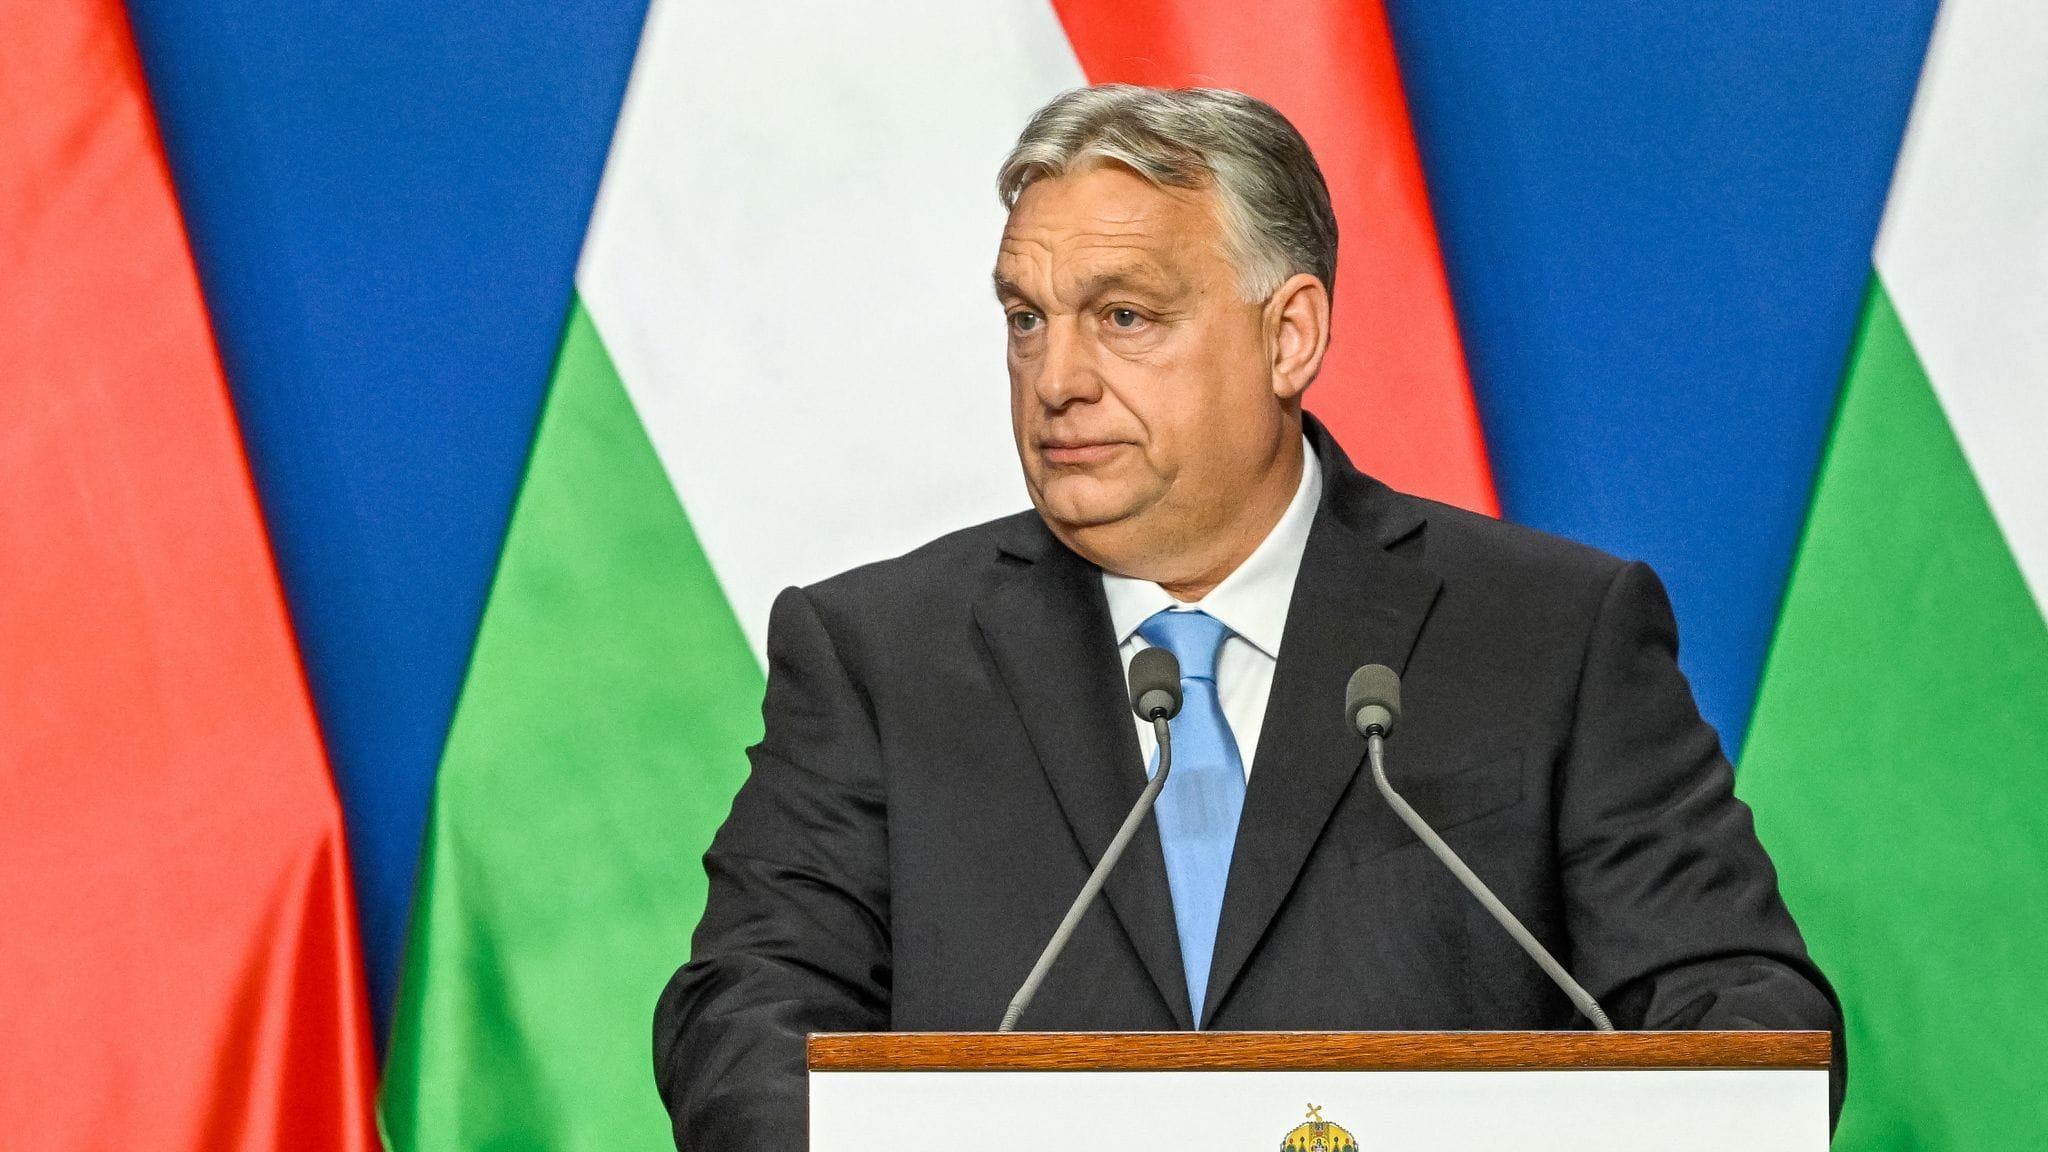 Victor Orbán unterminiert Nato und EU und stützt russisches Narrativ